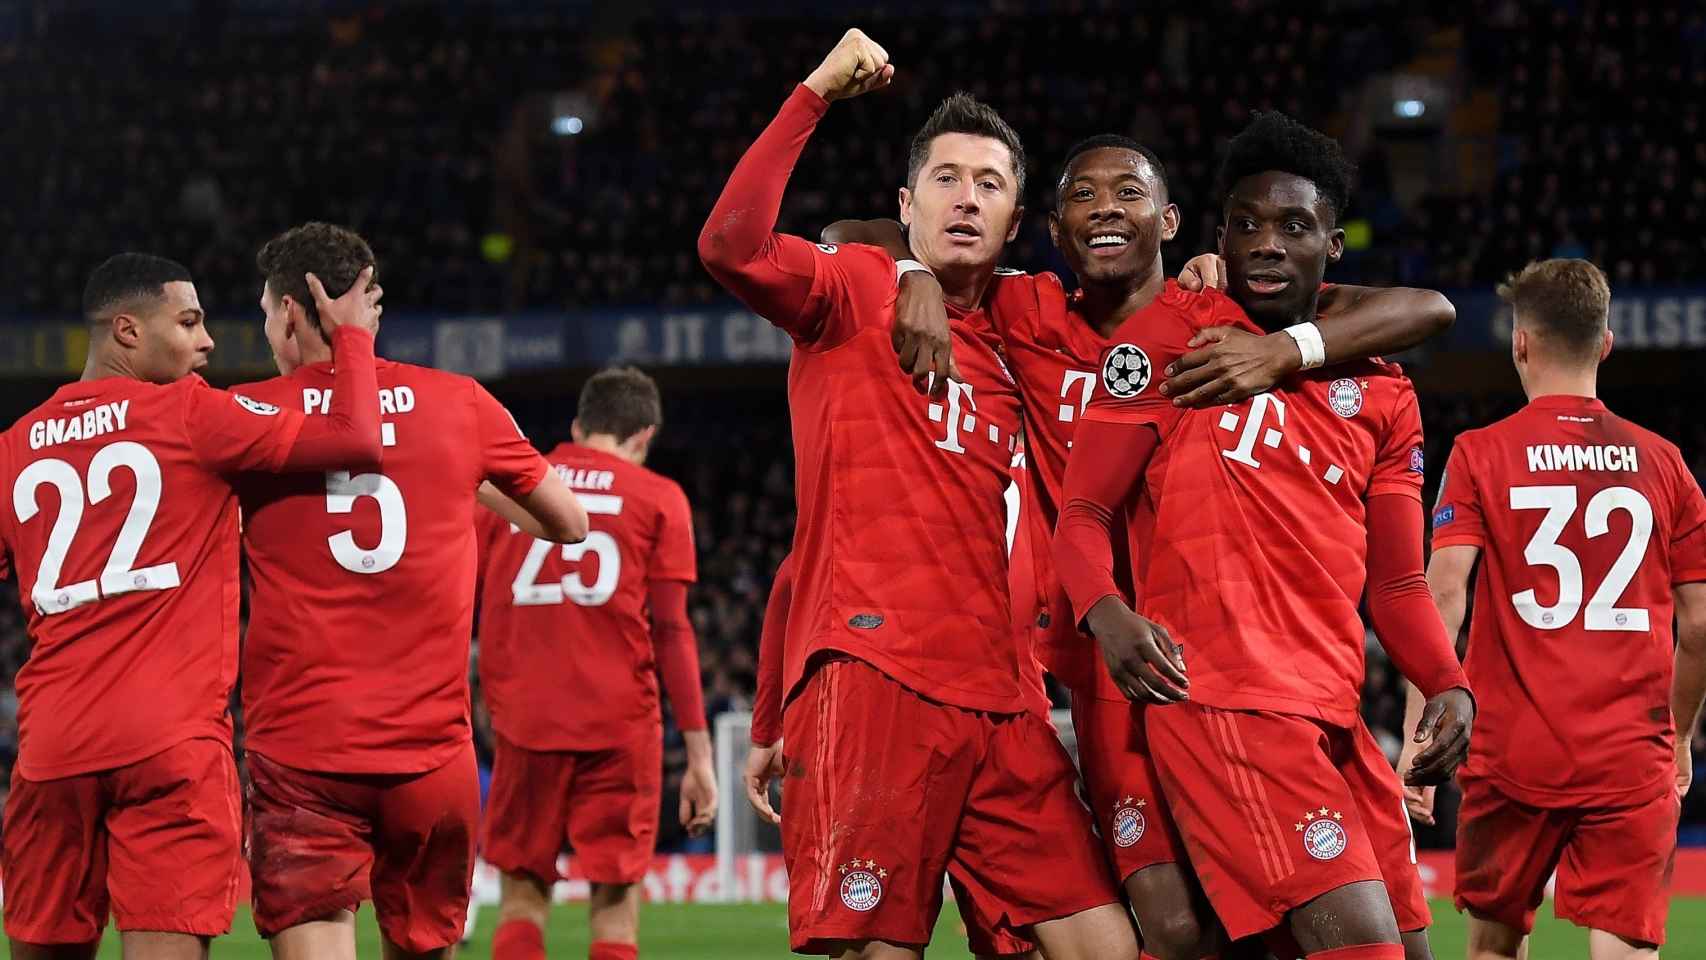 Los jugadores del Bayern celebran uno de los goles del partido